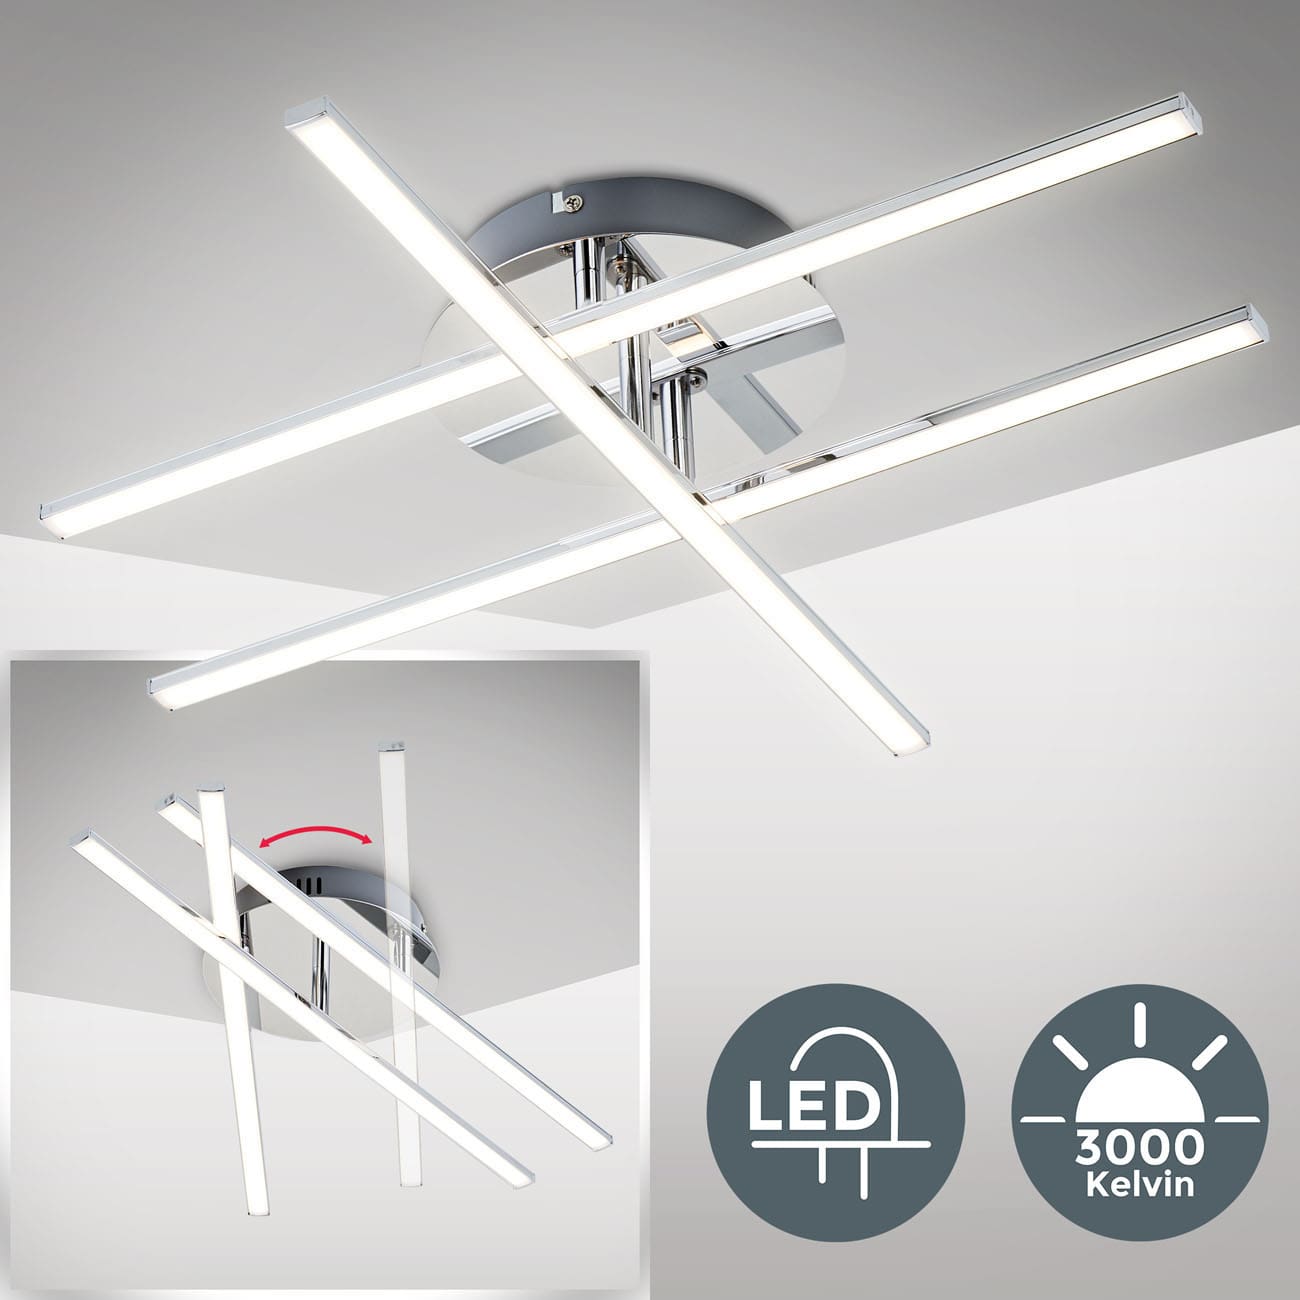 LED Deckenleuchte 50cm - 3-flammig - Wohnzimmer-Deckenlampe modernes Design 230V schwenkbar 12,5W 1150lm 3000K warmweiß | chromfarbig - 3